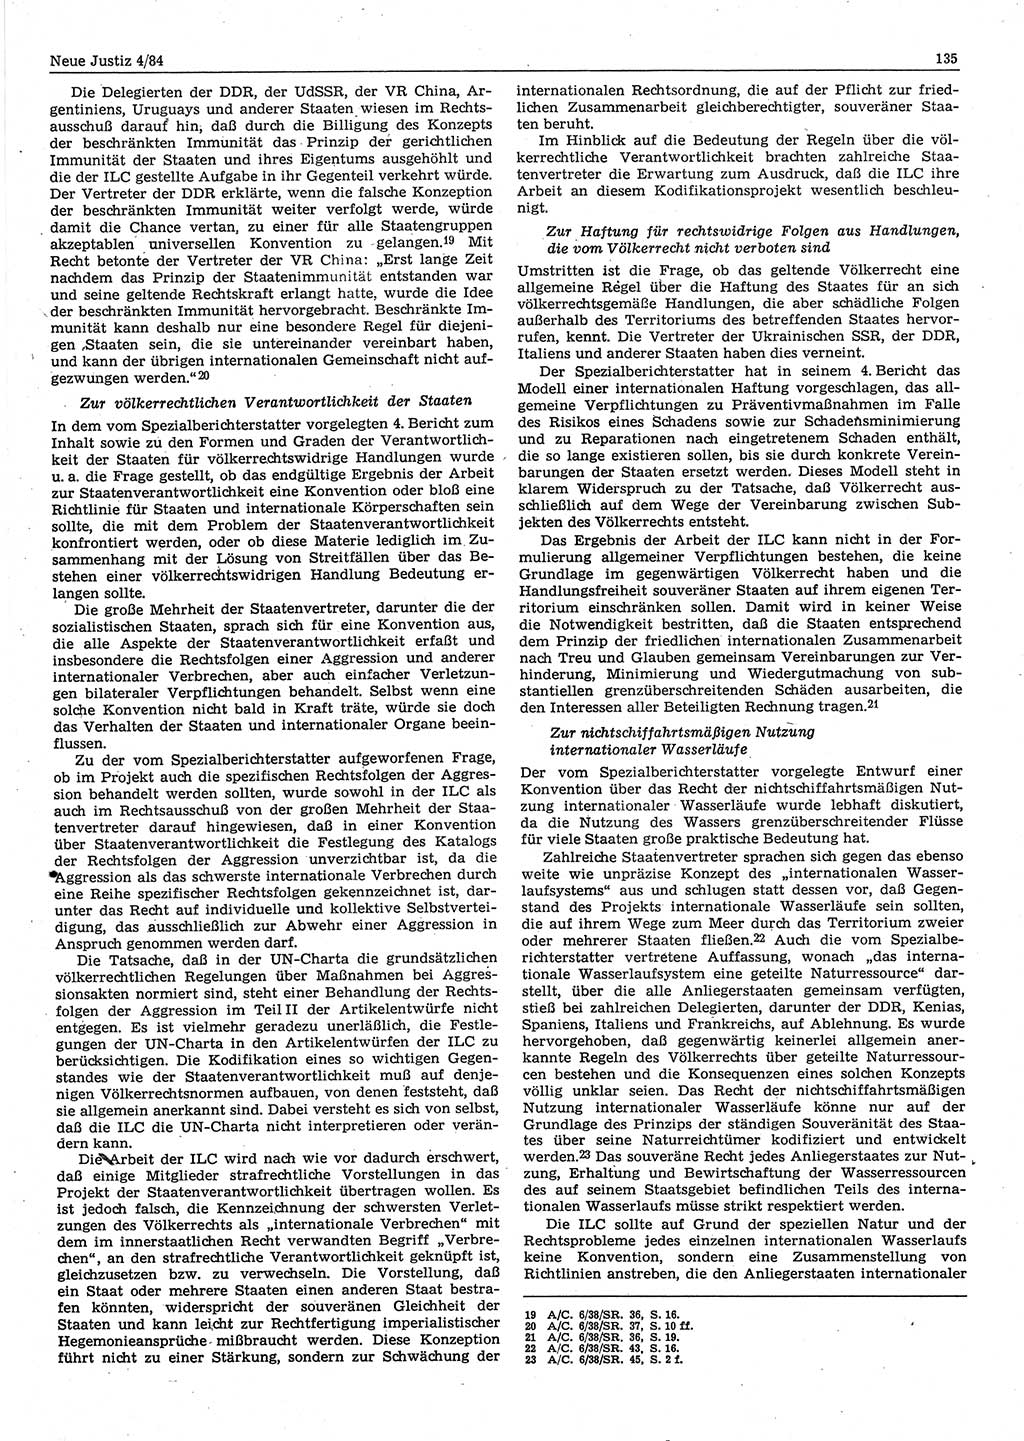 Neue Justiz (NJ), Zeitschrift für sozialistisches Recht und Gesetzlichkeit [Deutsche Demokratische Republik (DDR)], 38. Jahrgang 1984, Seite 135 (NJ DDR 1984, S. 135)